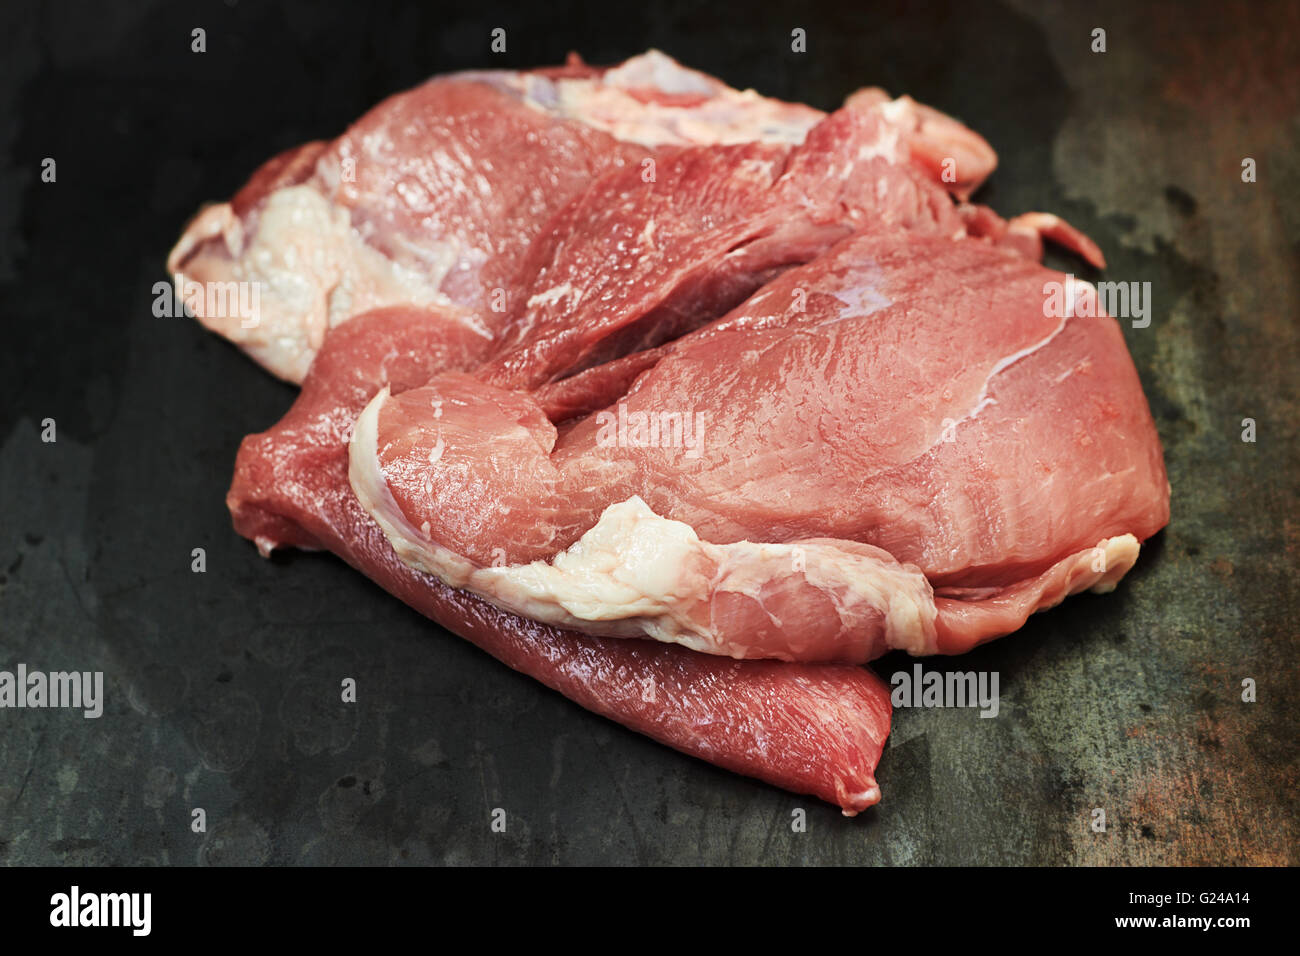 Trozo de carne deshuesada de cerdo cruda Foto de stock